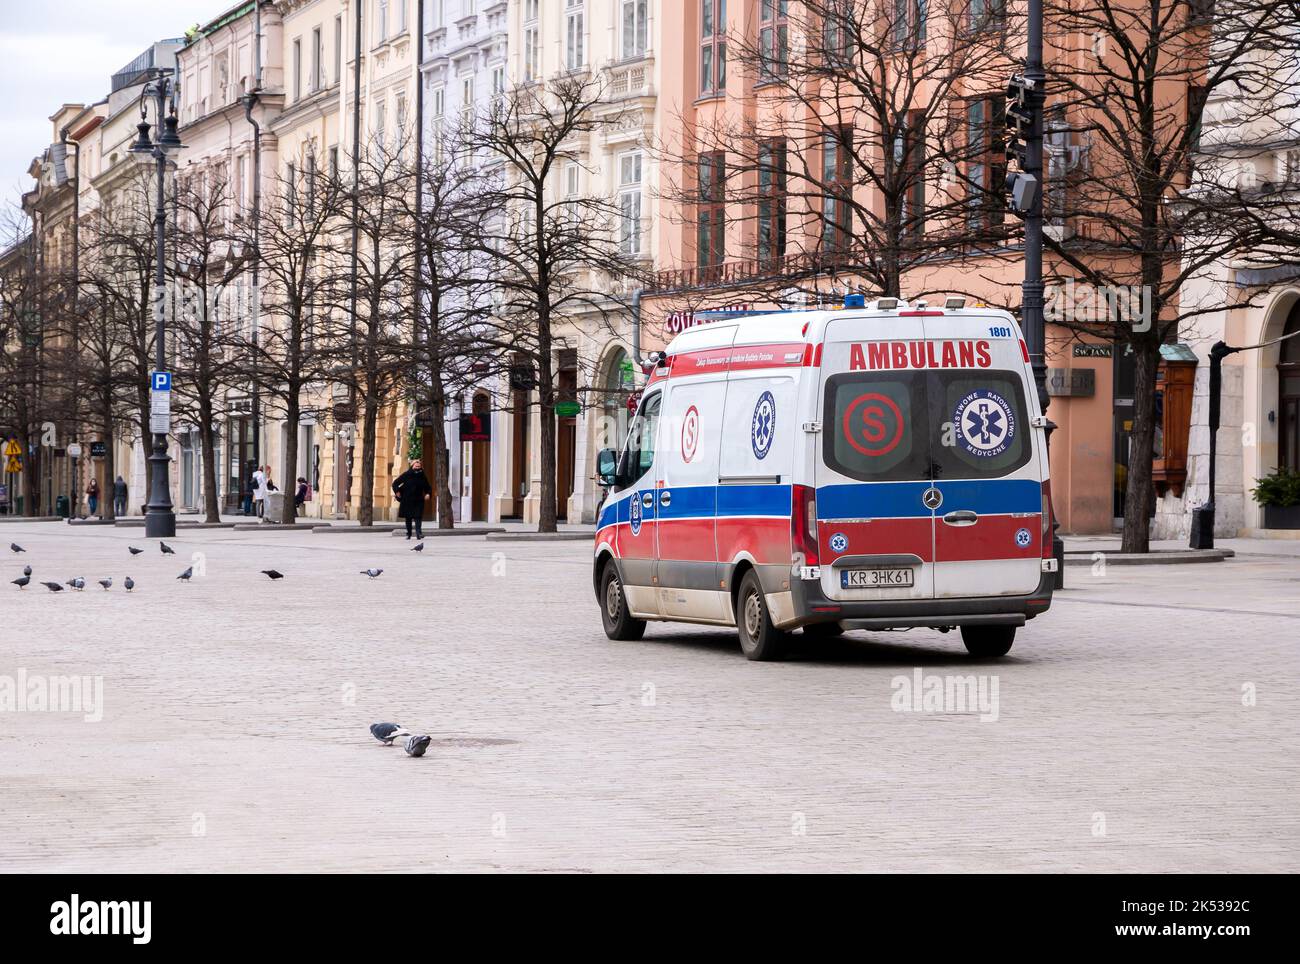 Cracovia, Polonia, ambulanza polacca, veicolo di servizio di emergenza sulla strada, indietro. Trasporto di emergenza, ambulanze, trasporti di sicurezza pubblica Foto Stock